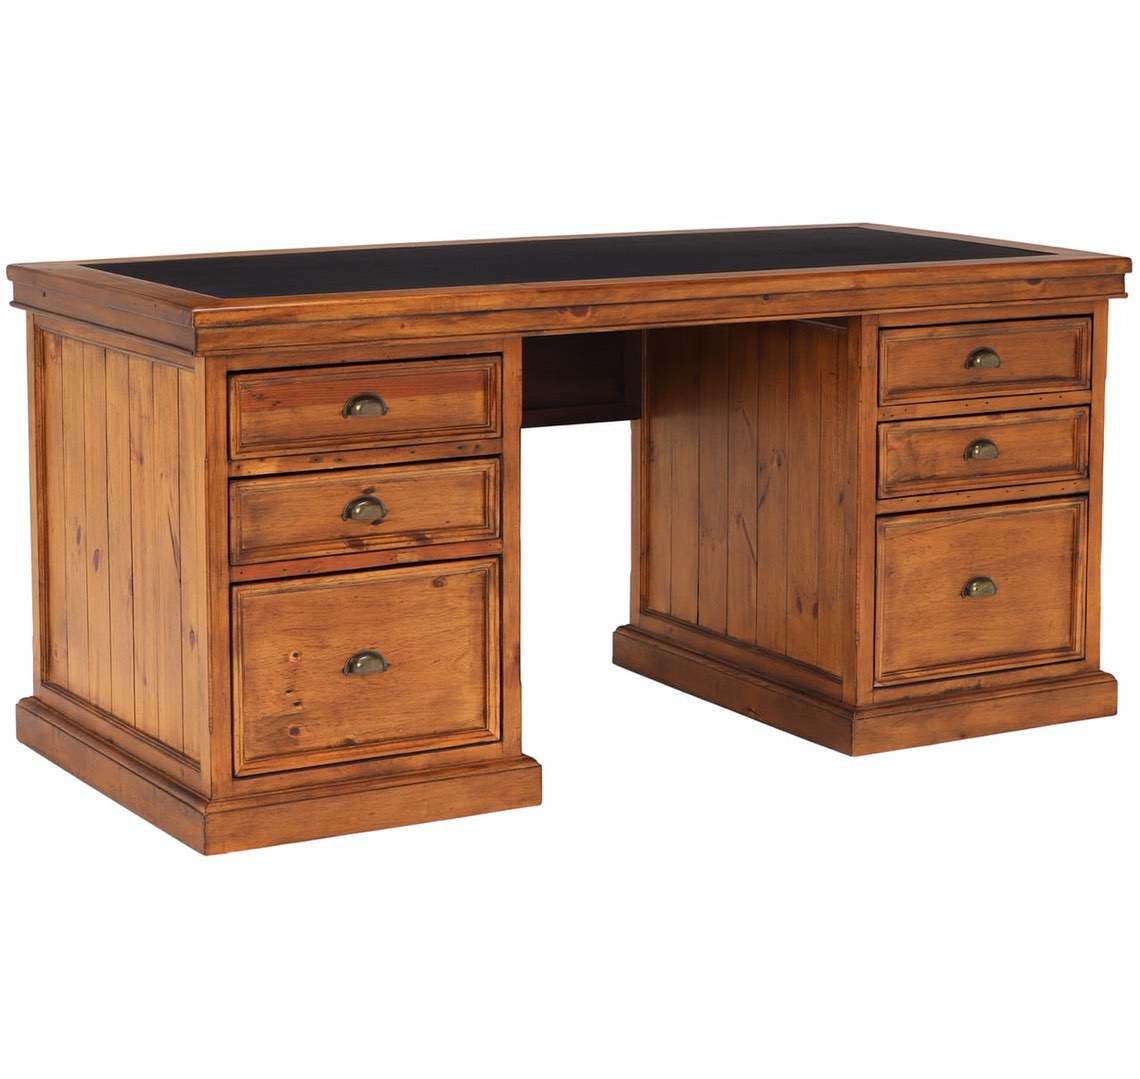 Made to Order Furniture. - Desk 026-01